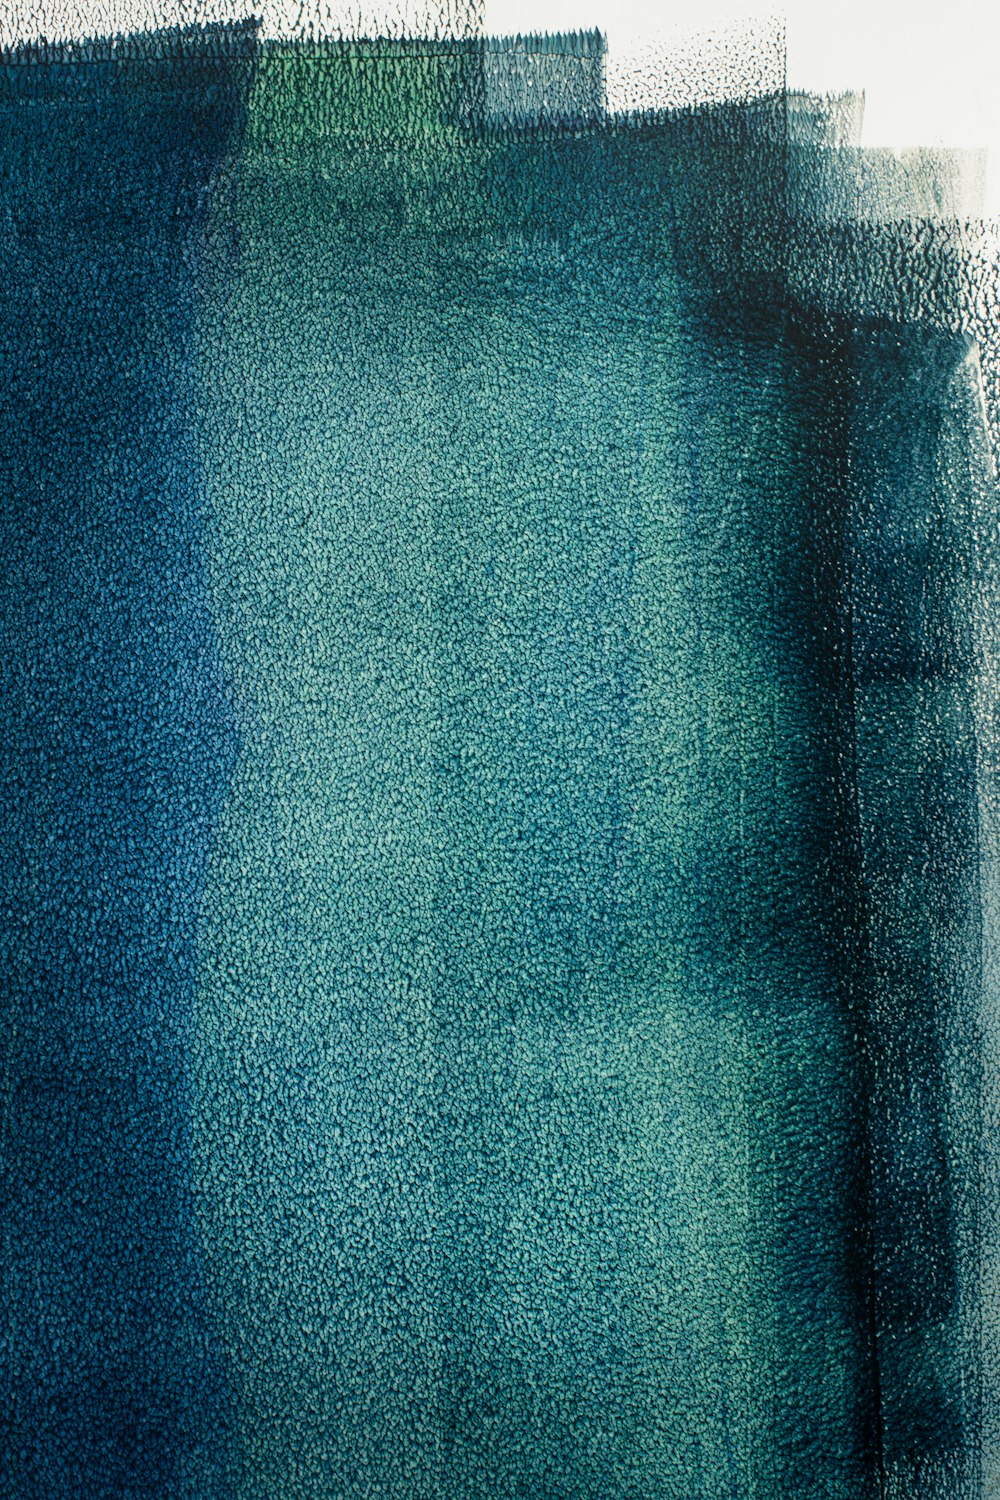 têxtil azul em imagem de perto